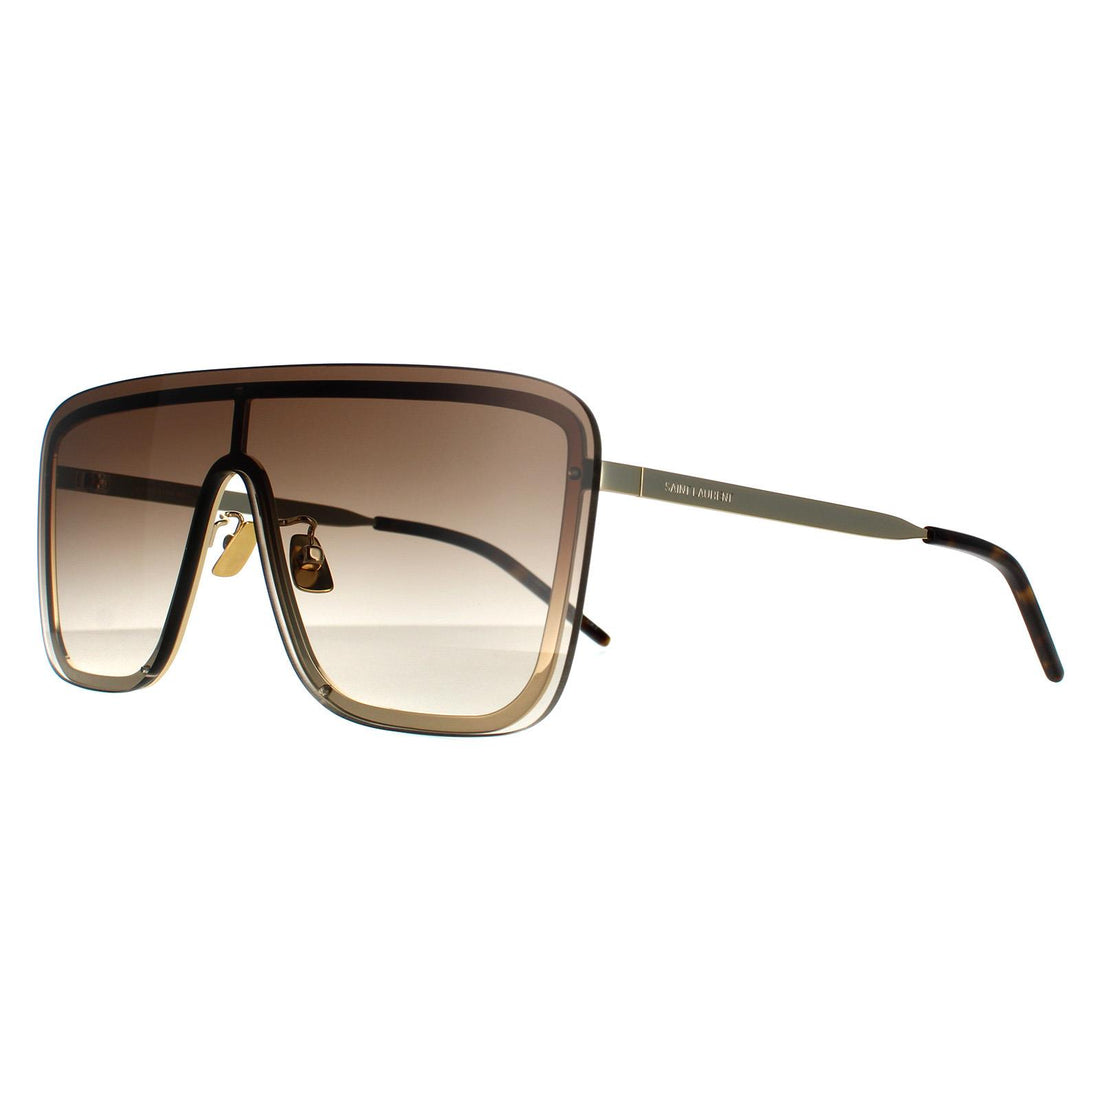 Saint Laurent Sunglasses SL 364 MASK 006 Gold Brown Gradient